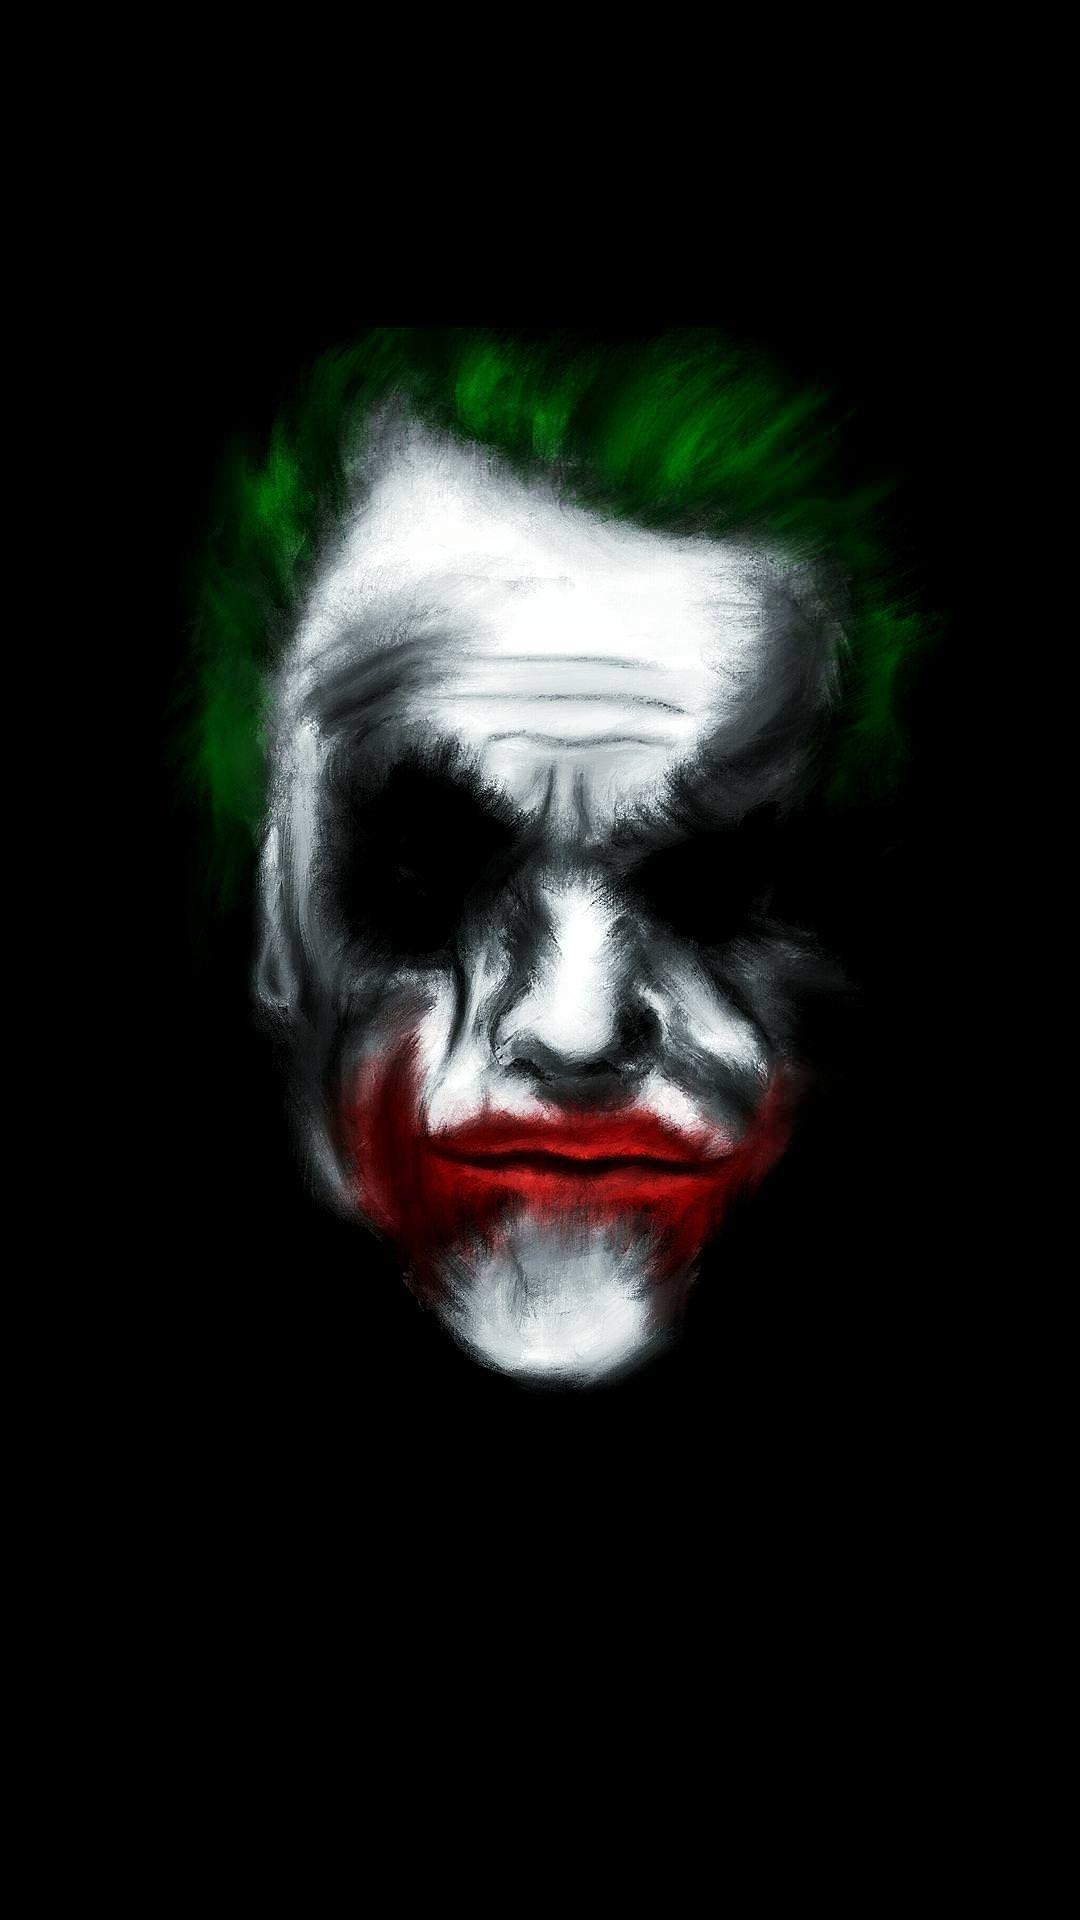 Creative Joker Wallpapers - Top Free Creative Joker Backgrounds ...